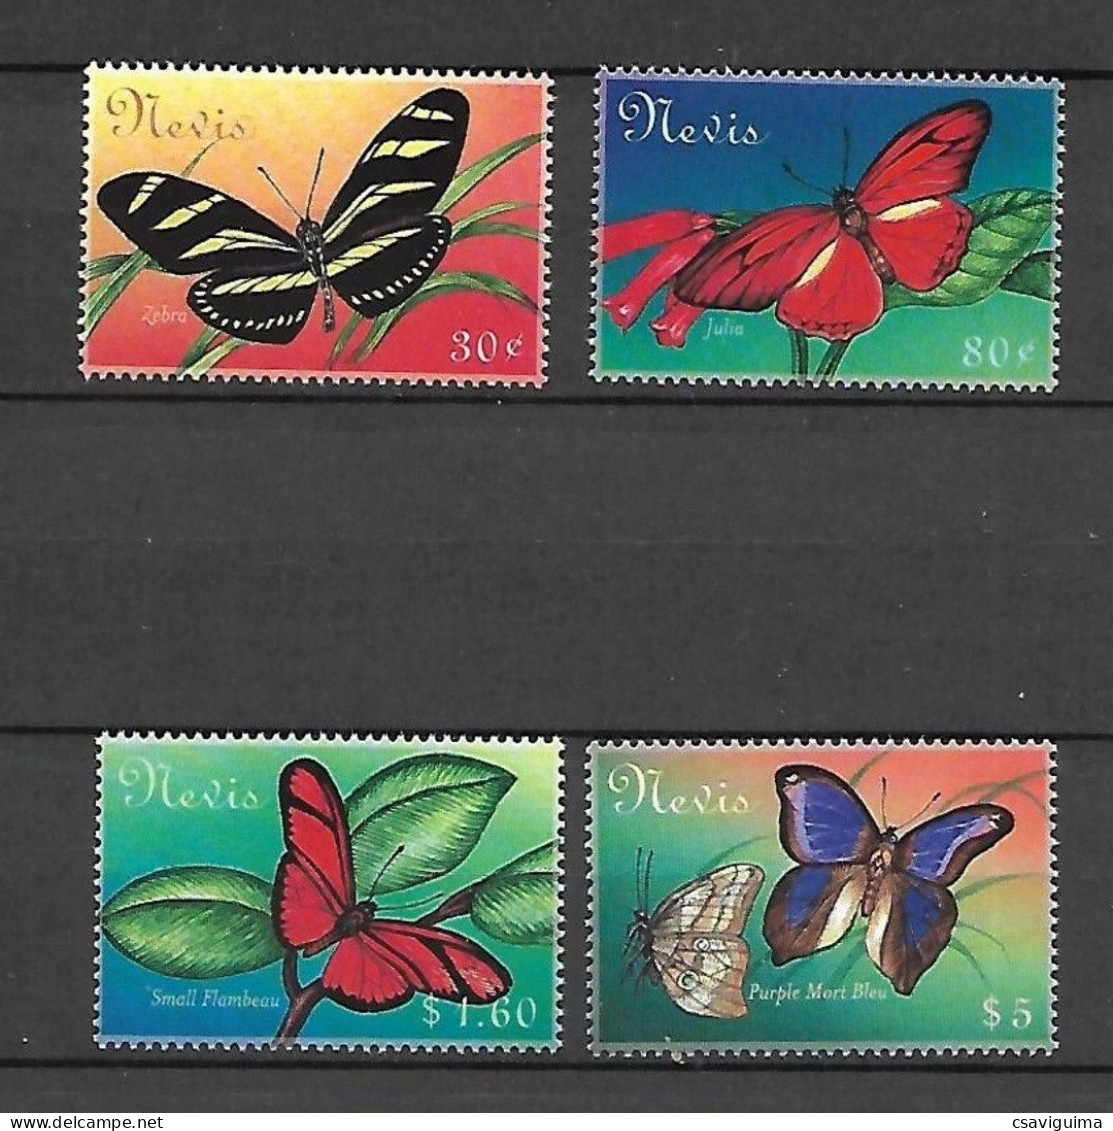 Nevis - 2000 - Butterflies - Yv 1434/37 - Schmetterlinge